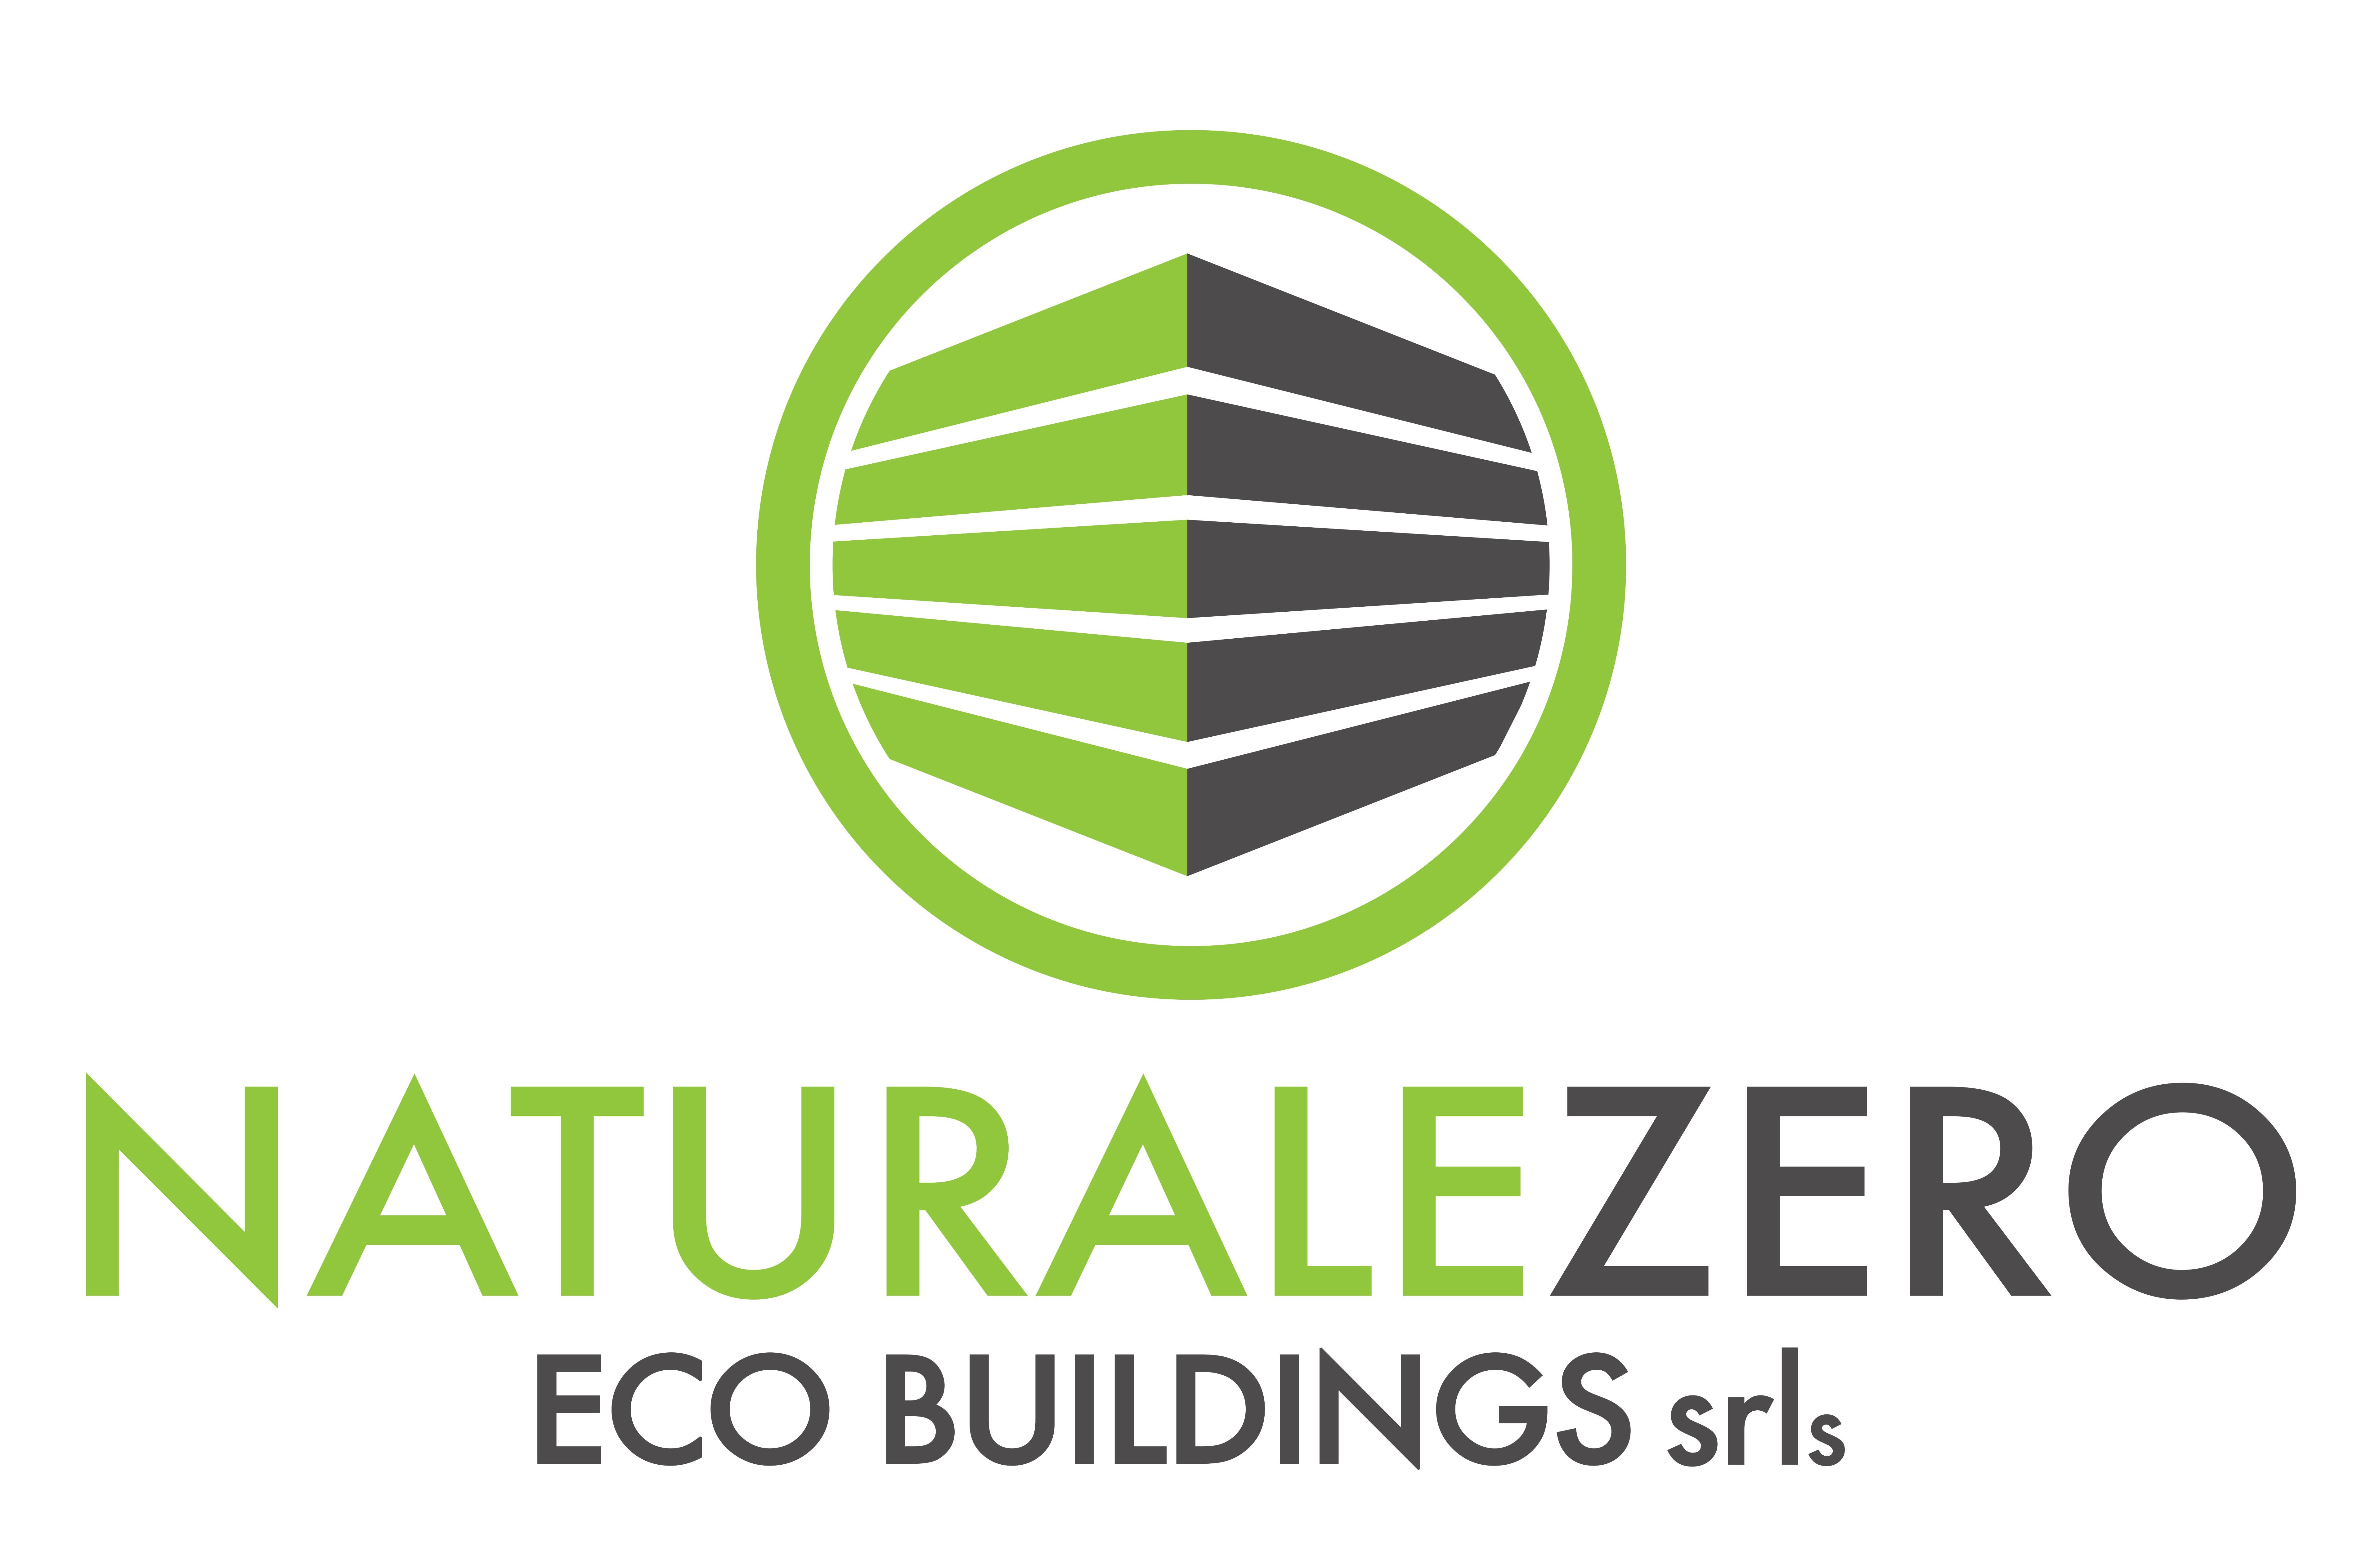 NaturaleZero Acobuildings srls